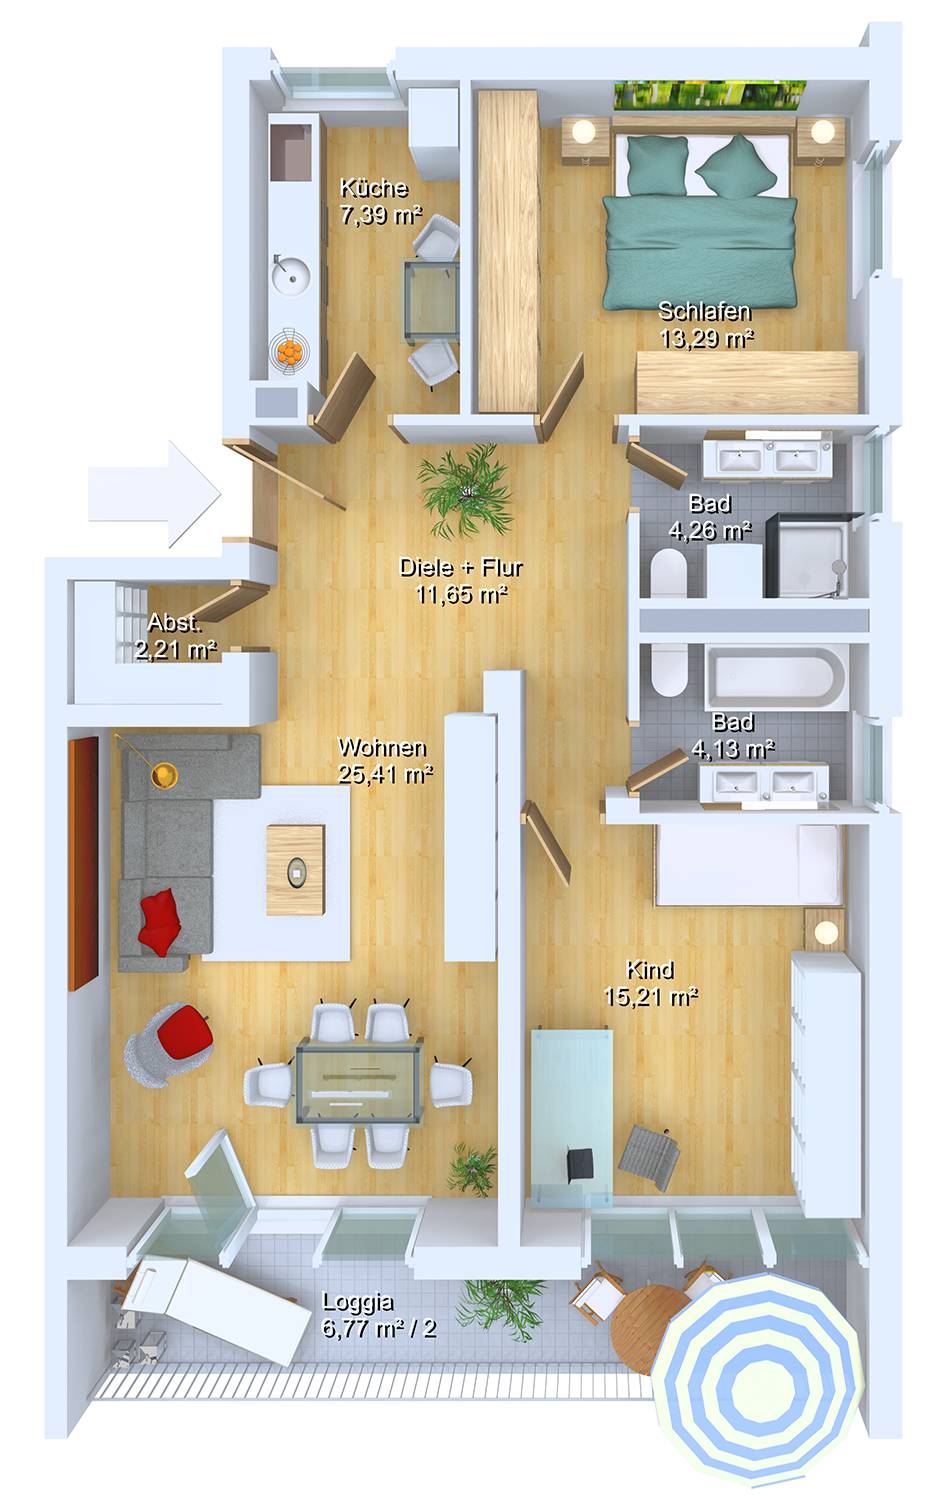 Visualisierungen eines 3D Grundrisses einer Wohneinheit in einem Mehrfamilienhaus. Erstellt für PR Immobilien / München im Jahre 2021